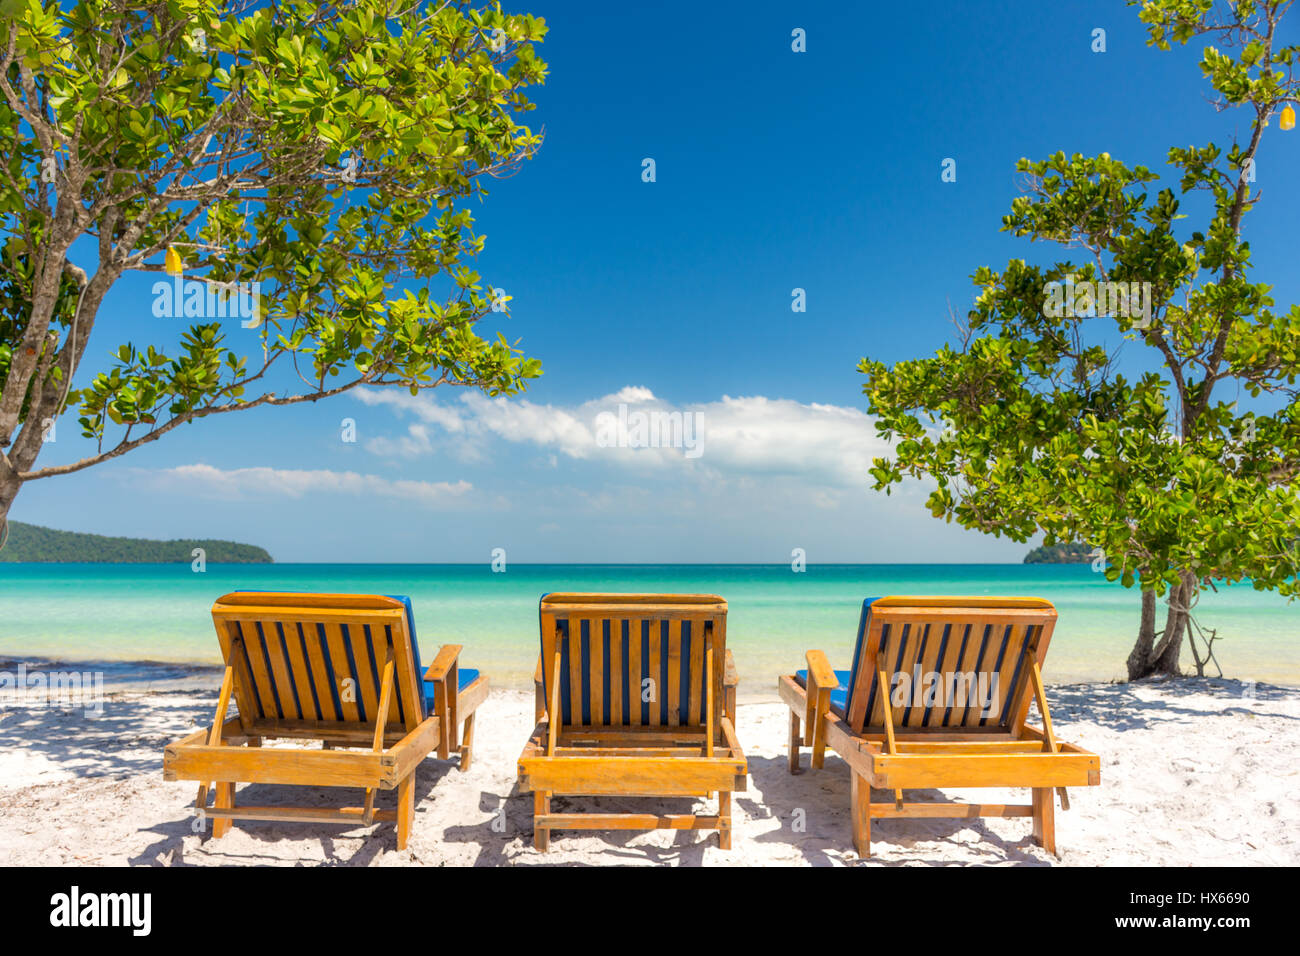 Tre lettini per prendere il sole su una spiaggia di sabbia bianca che guarda ad una tranquilla vuoto mare tropicale. Angolo basso. Foto Stock